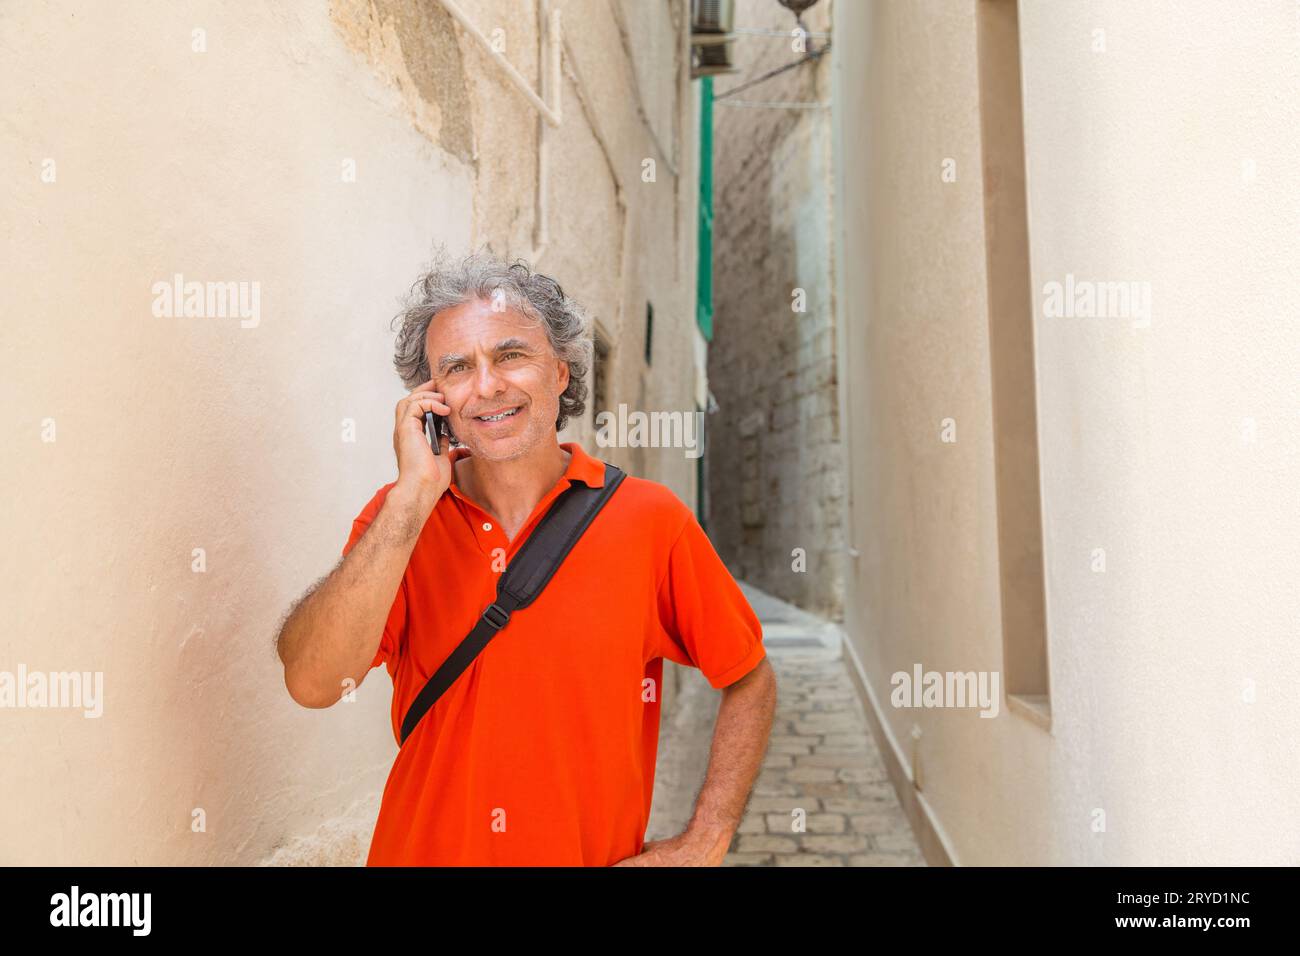 Touriste au téléphone dans la rue de l'ancien village Banque D'Images